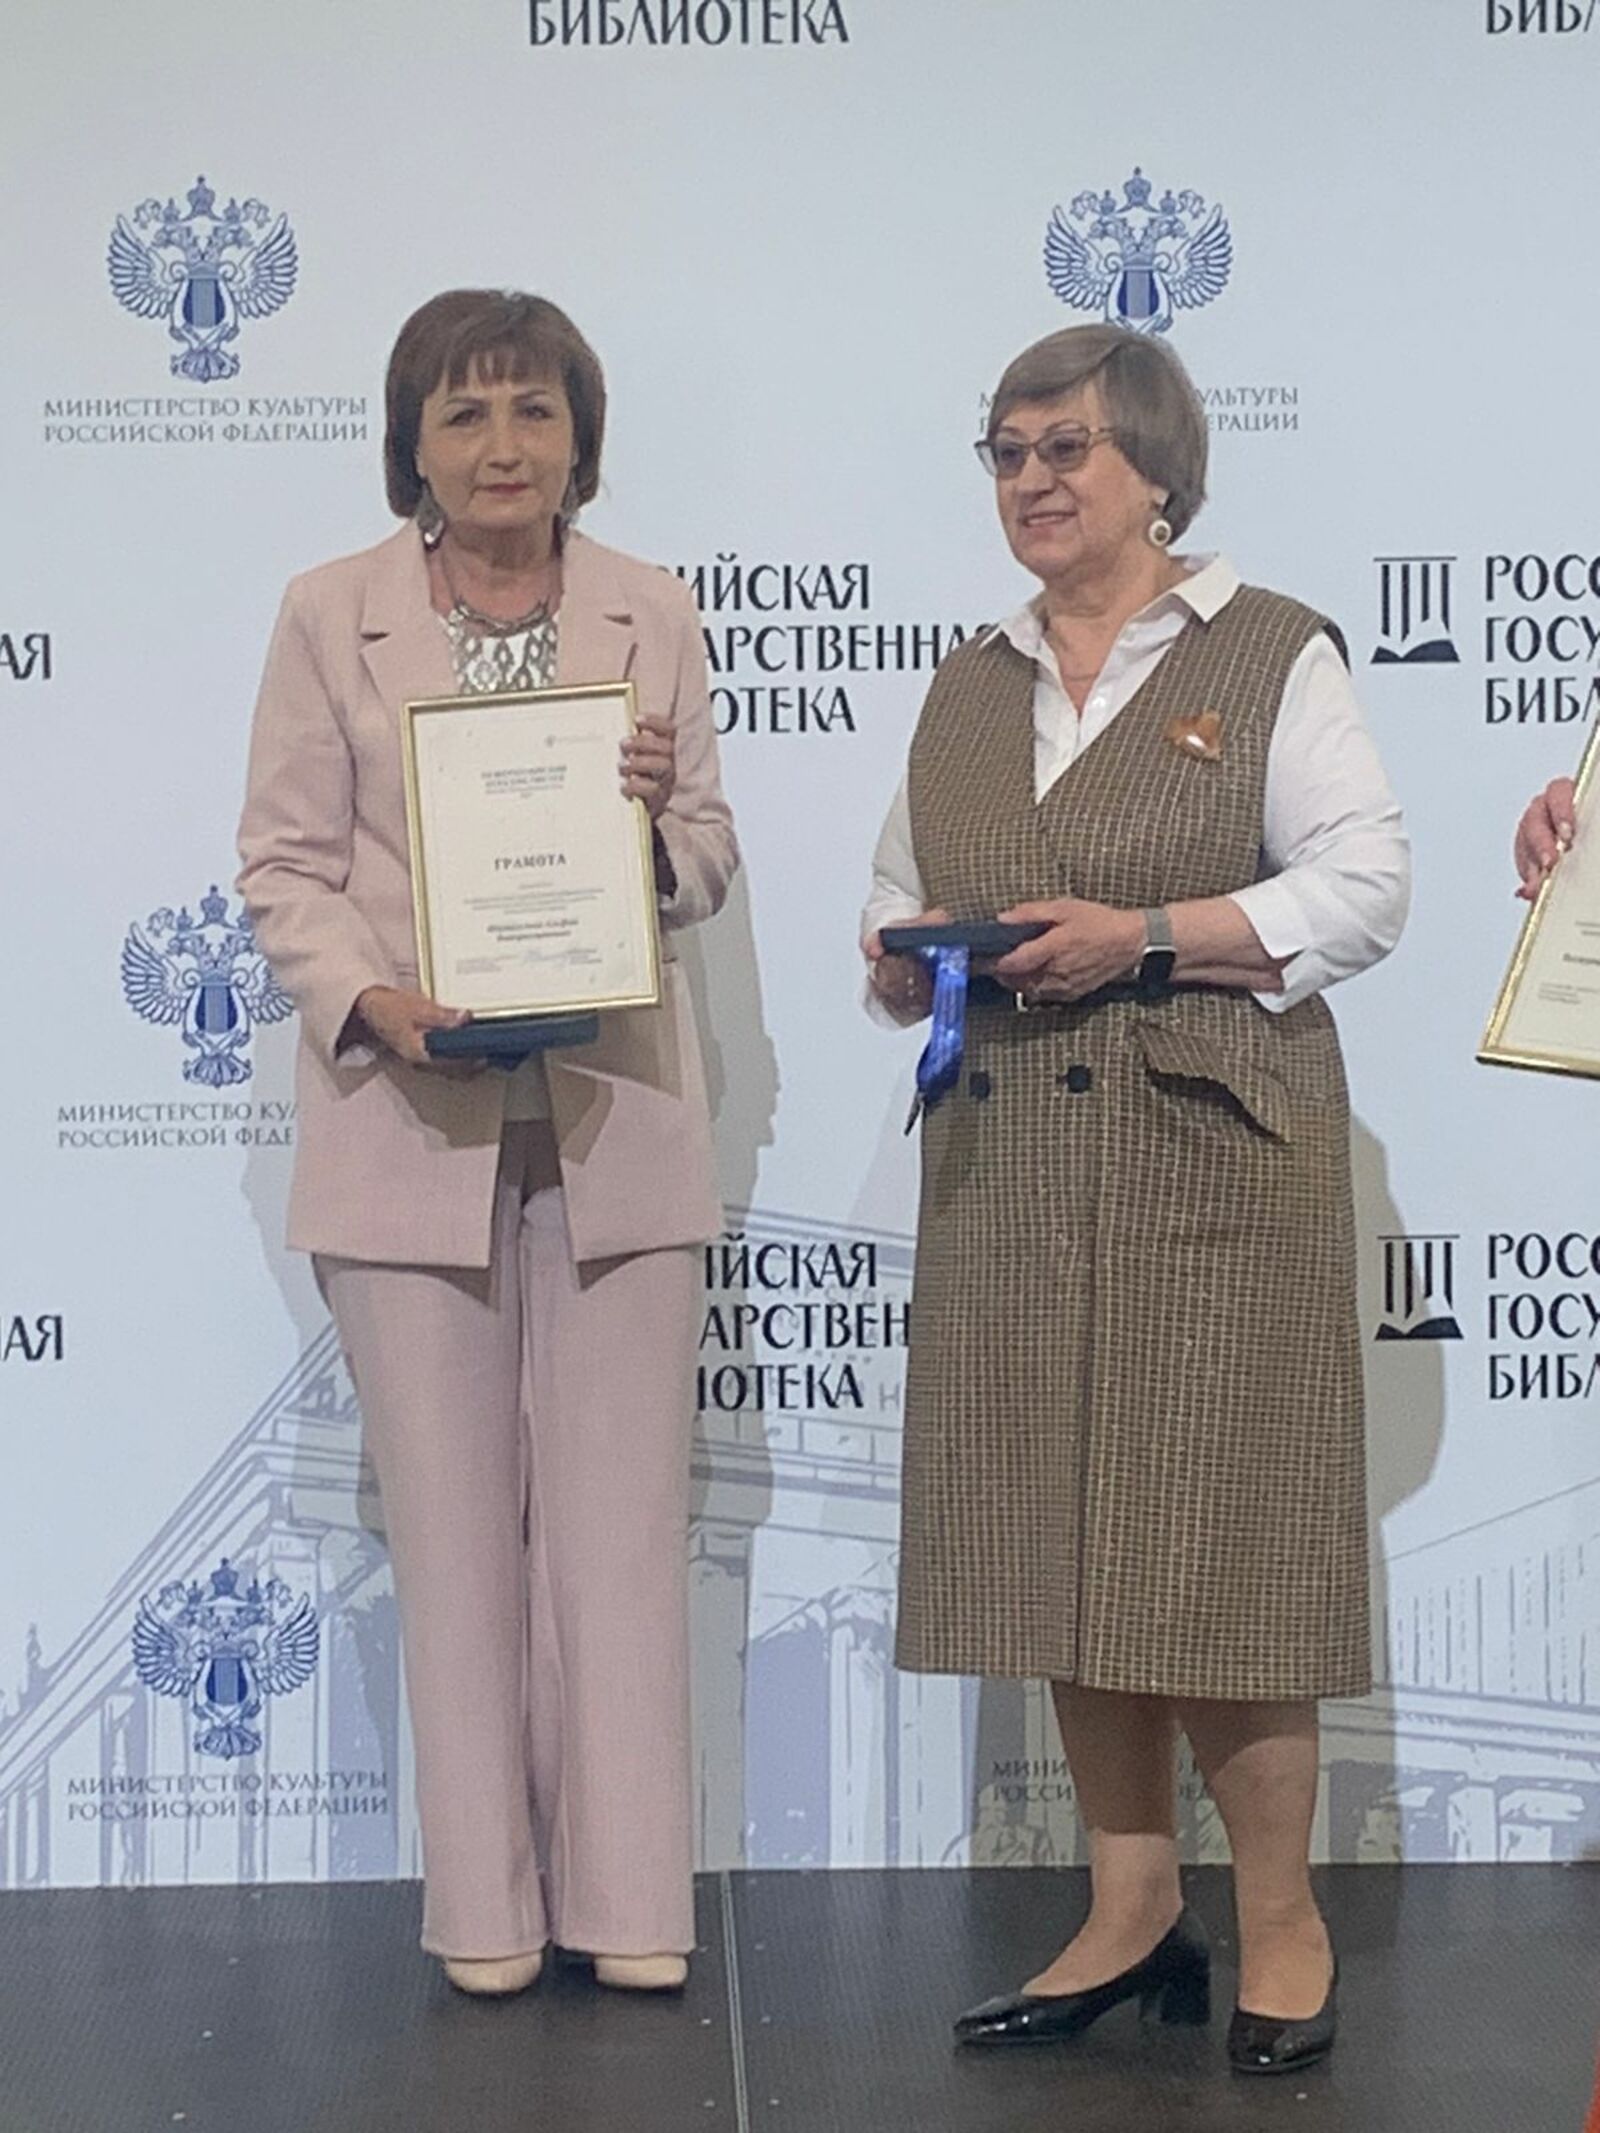 Сегодня, в Общероссийский день библиотек, в Москве чествовали Легенд библиотечного дела